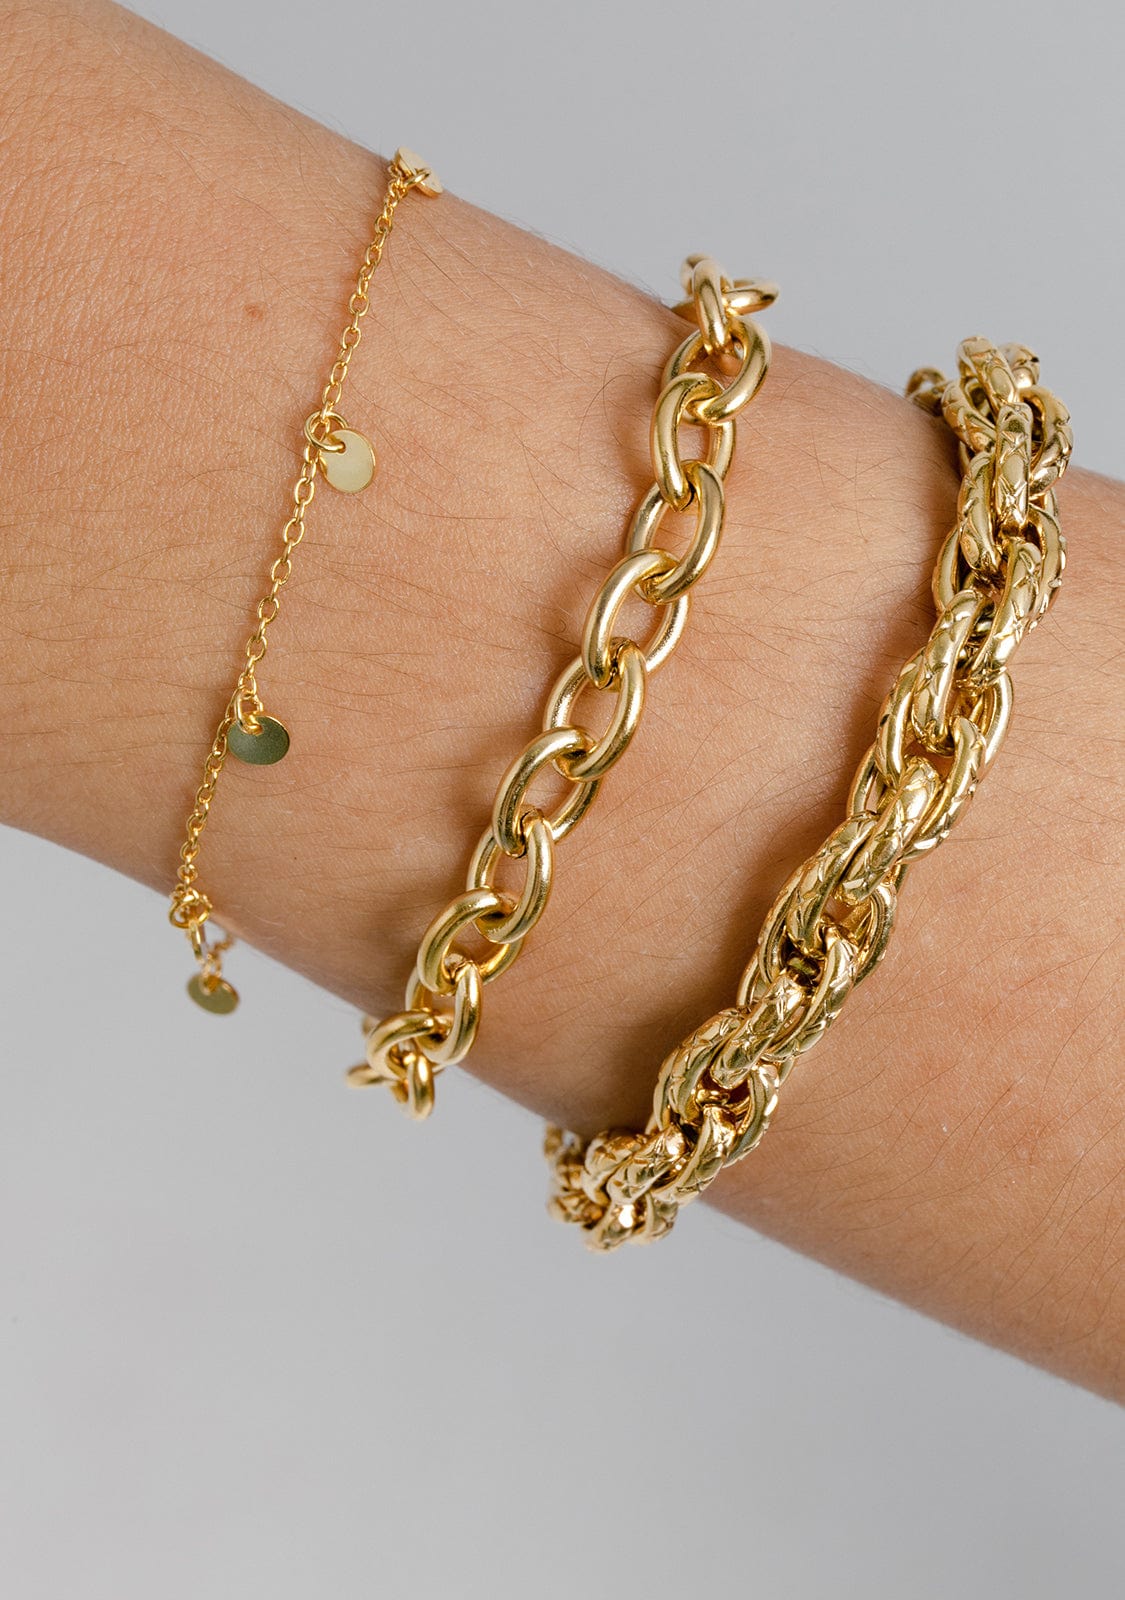 Bracelet Byzantine Gold